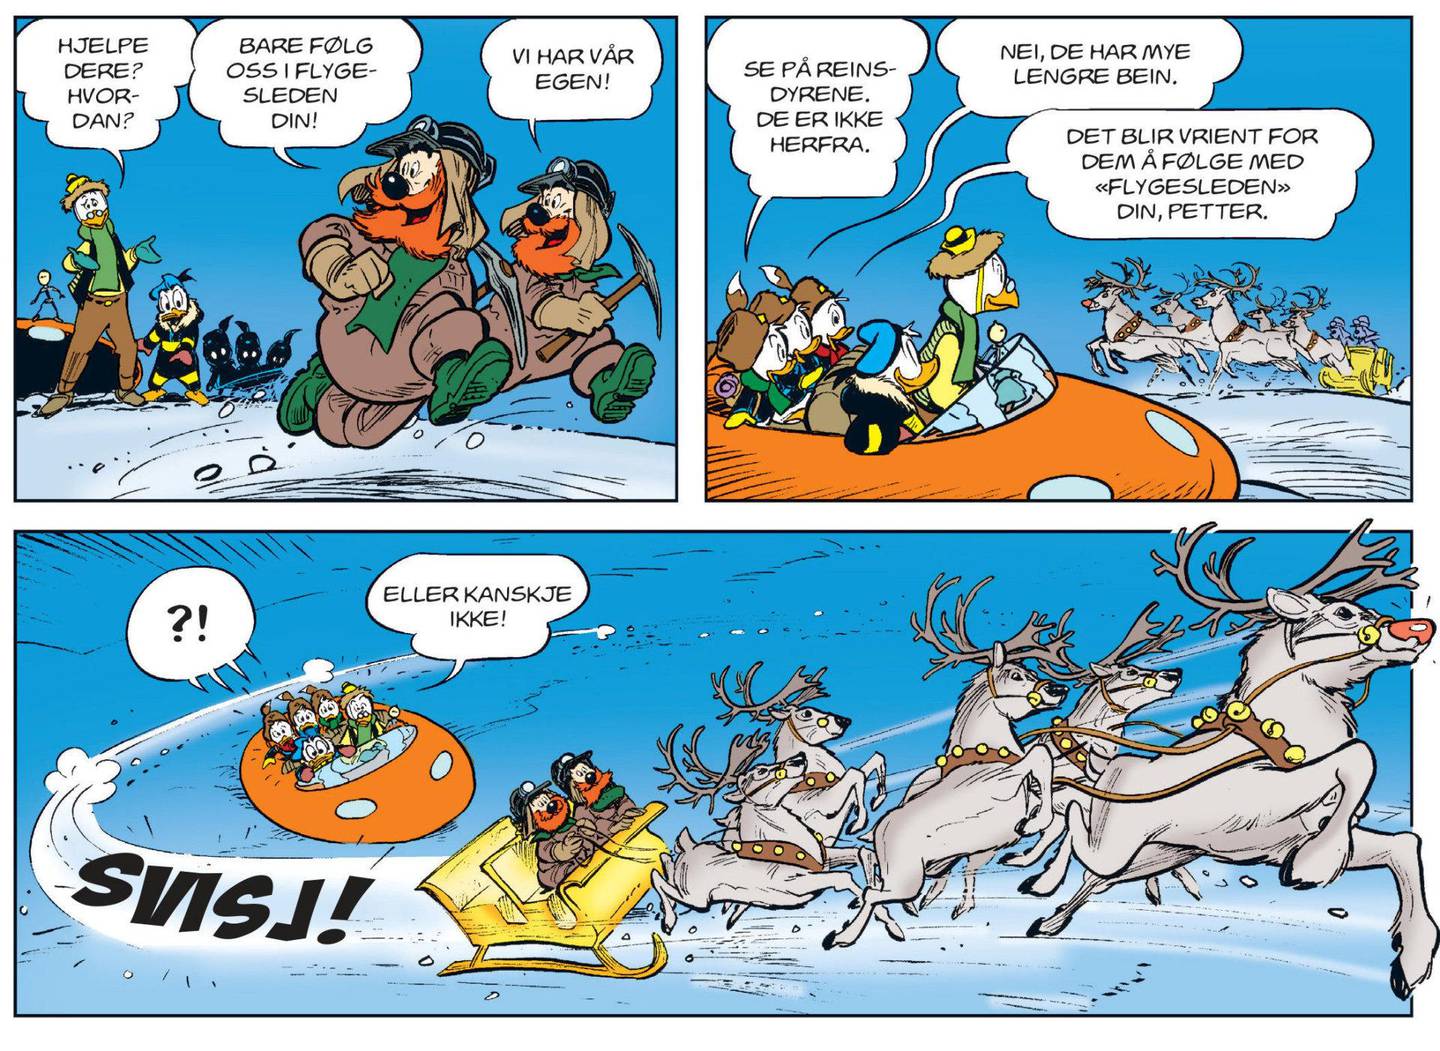 Donald og guttene i Norge er blitt en moderne tradisjon blant de mange Disney-juleheftene. Disse nylagde historiene skapes av Arild Midthun, som i år frakter våre venner til Svalbard og isen over Arktis. ILLUSTRASJON FRA HEFTET/EGMONT